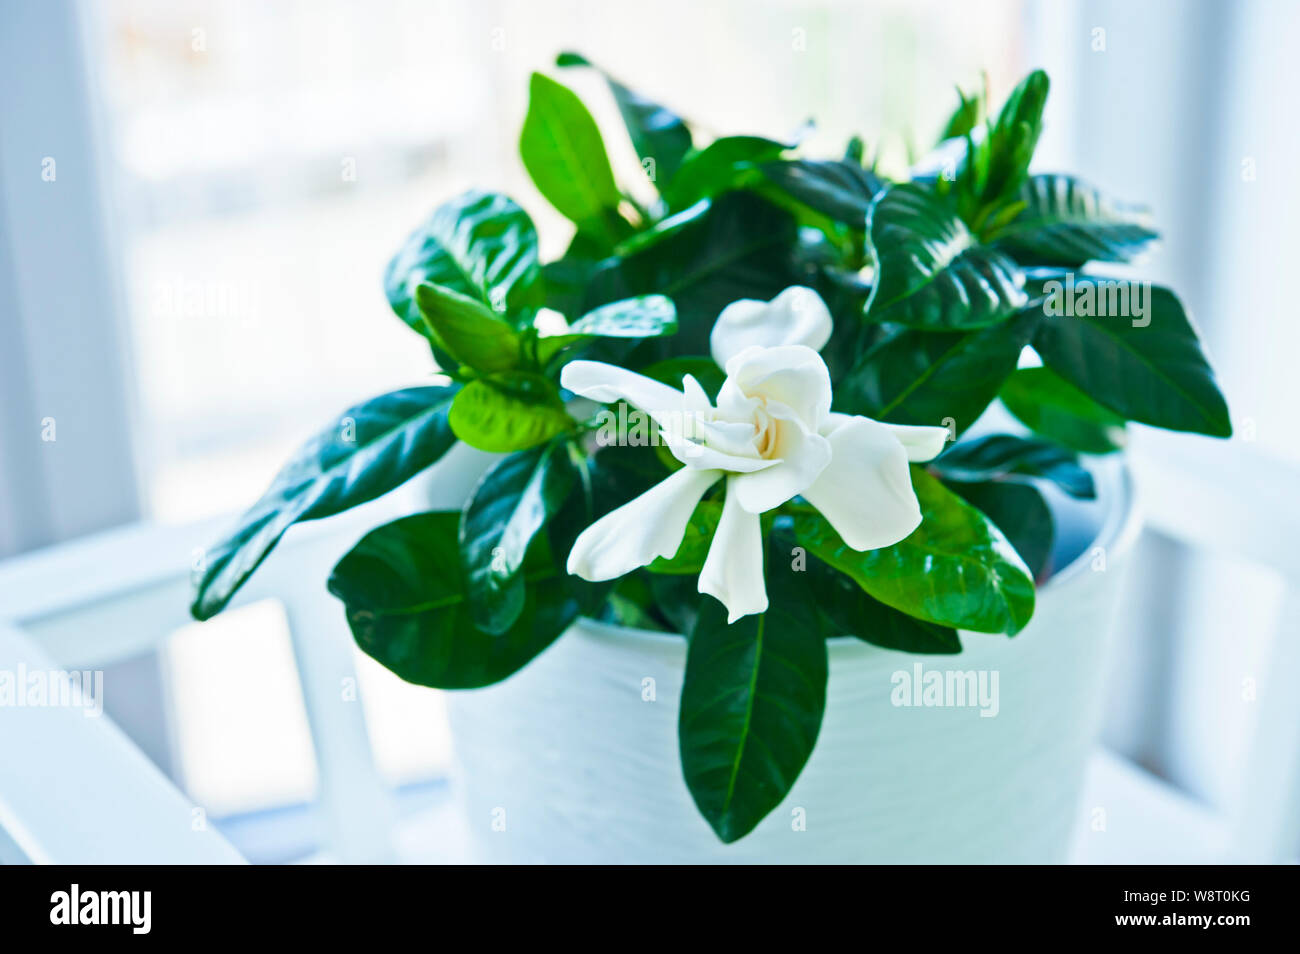 Gardenia jasminoides plante en fleurs dans un vase à fleurs blanches fleurs Banque D'Images